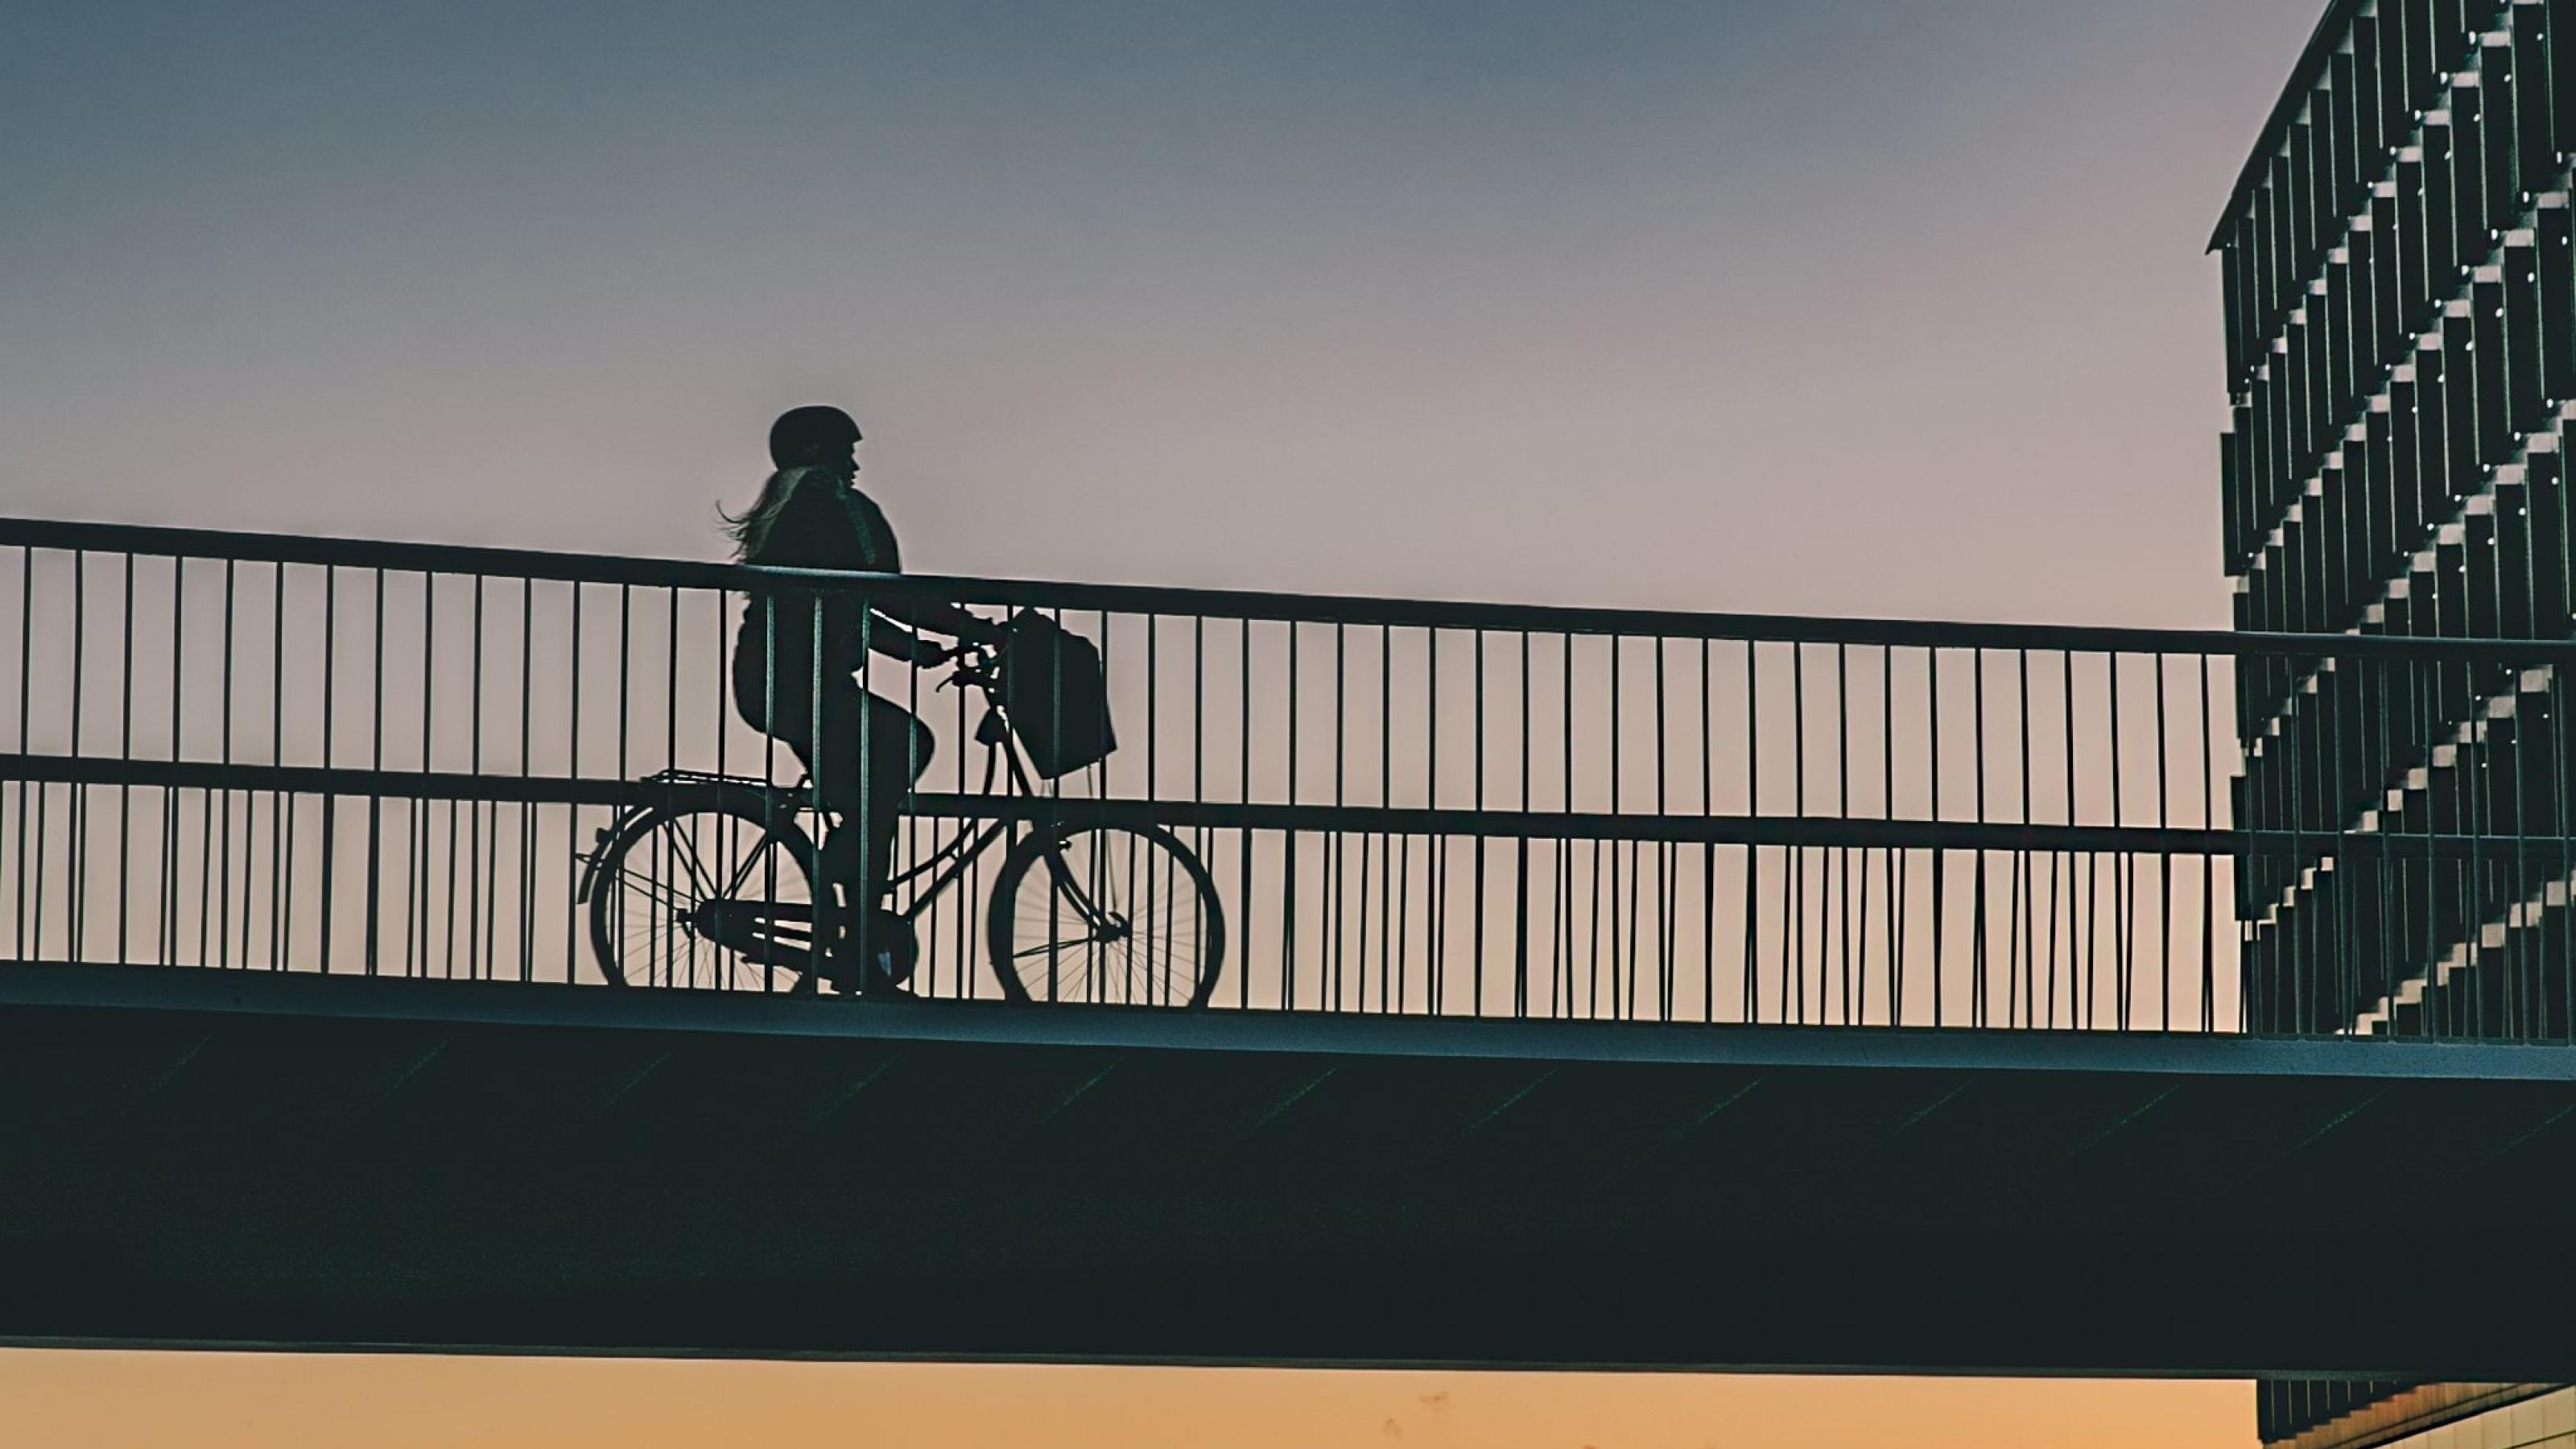 Das Bild zeigt die so genannte Fahrradschlange (auf EnglischCykelslangen, The Bicycle Snake). Das ist eine Brücke, die so konzipiert wurde, dass einzelne Teile der Stadt Kopenhagen für Fahrradfahrer und Fußgänger schneller miteinander verbunden werden. Autofahrer dürfen hier nicht drüber fahren.

http://www.visitcopenhagen.com/copenhagen/sightseeing/bike-city-copenhagen